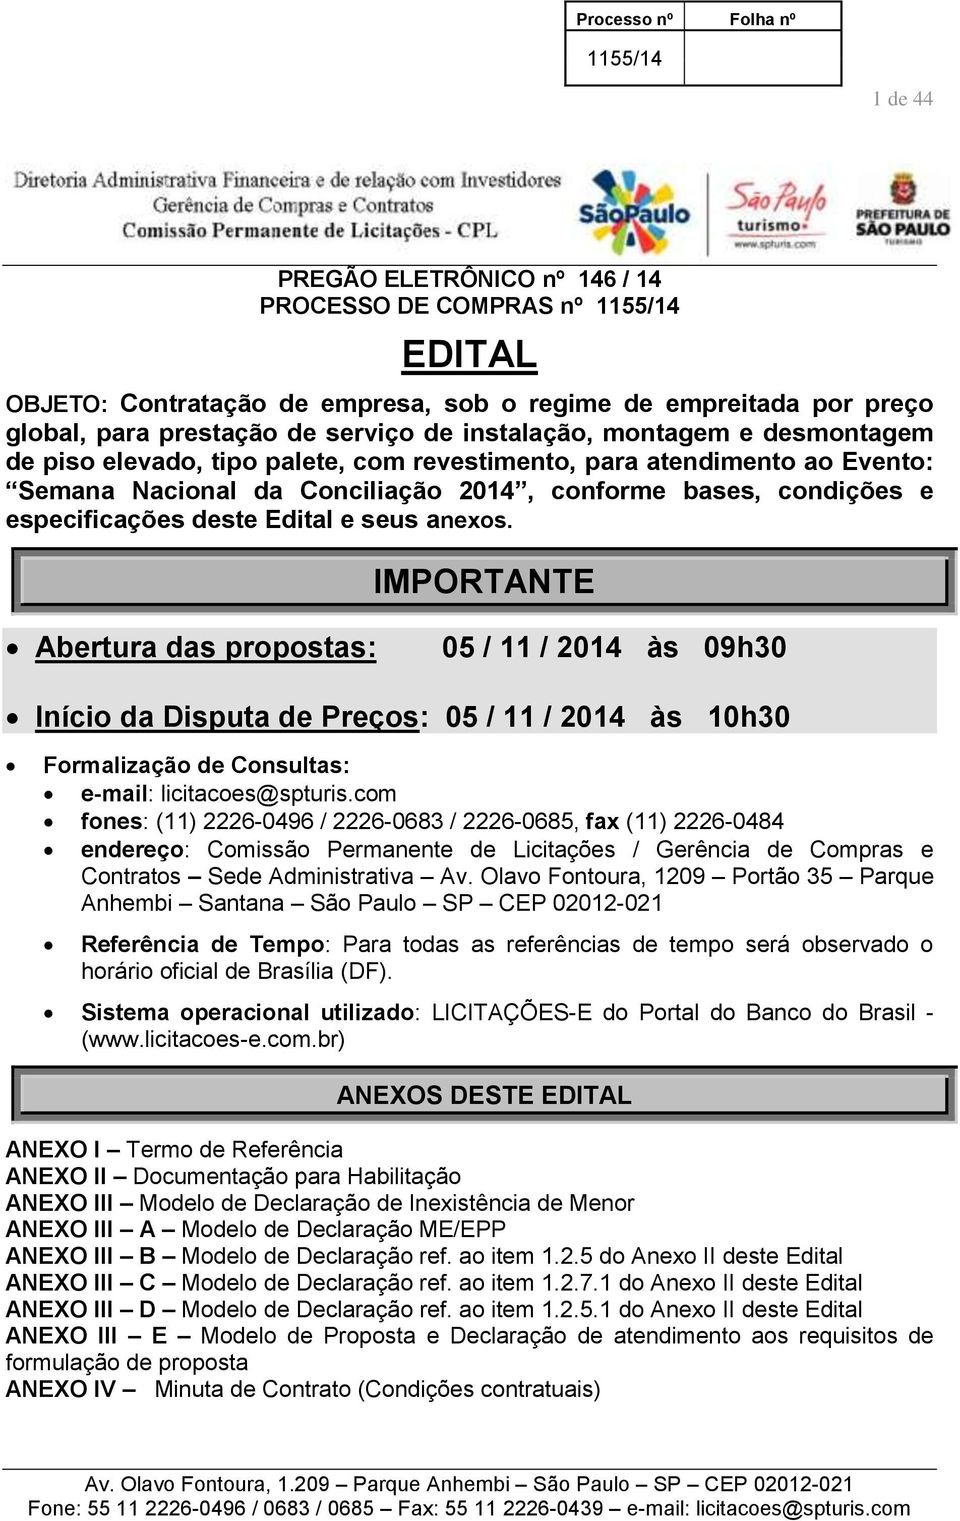 IMPORTANTE Abertura das propostas: 05 / 11 / 2014 às 09h30 Início da Disputa de Preços: 05 / 11 / 2014 às 10h30 Formalização de Consultas: e-mail: licitacoes@spturis.